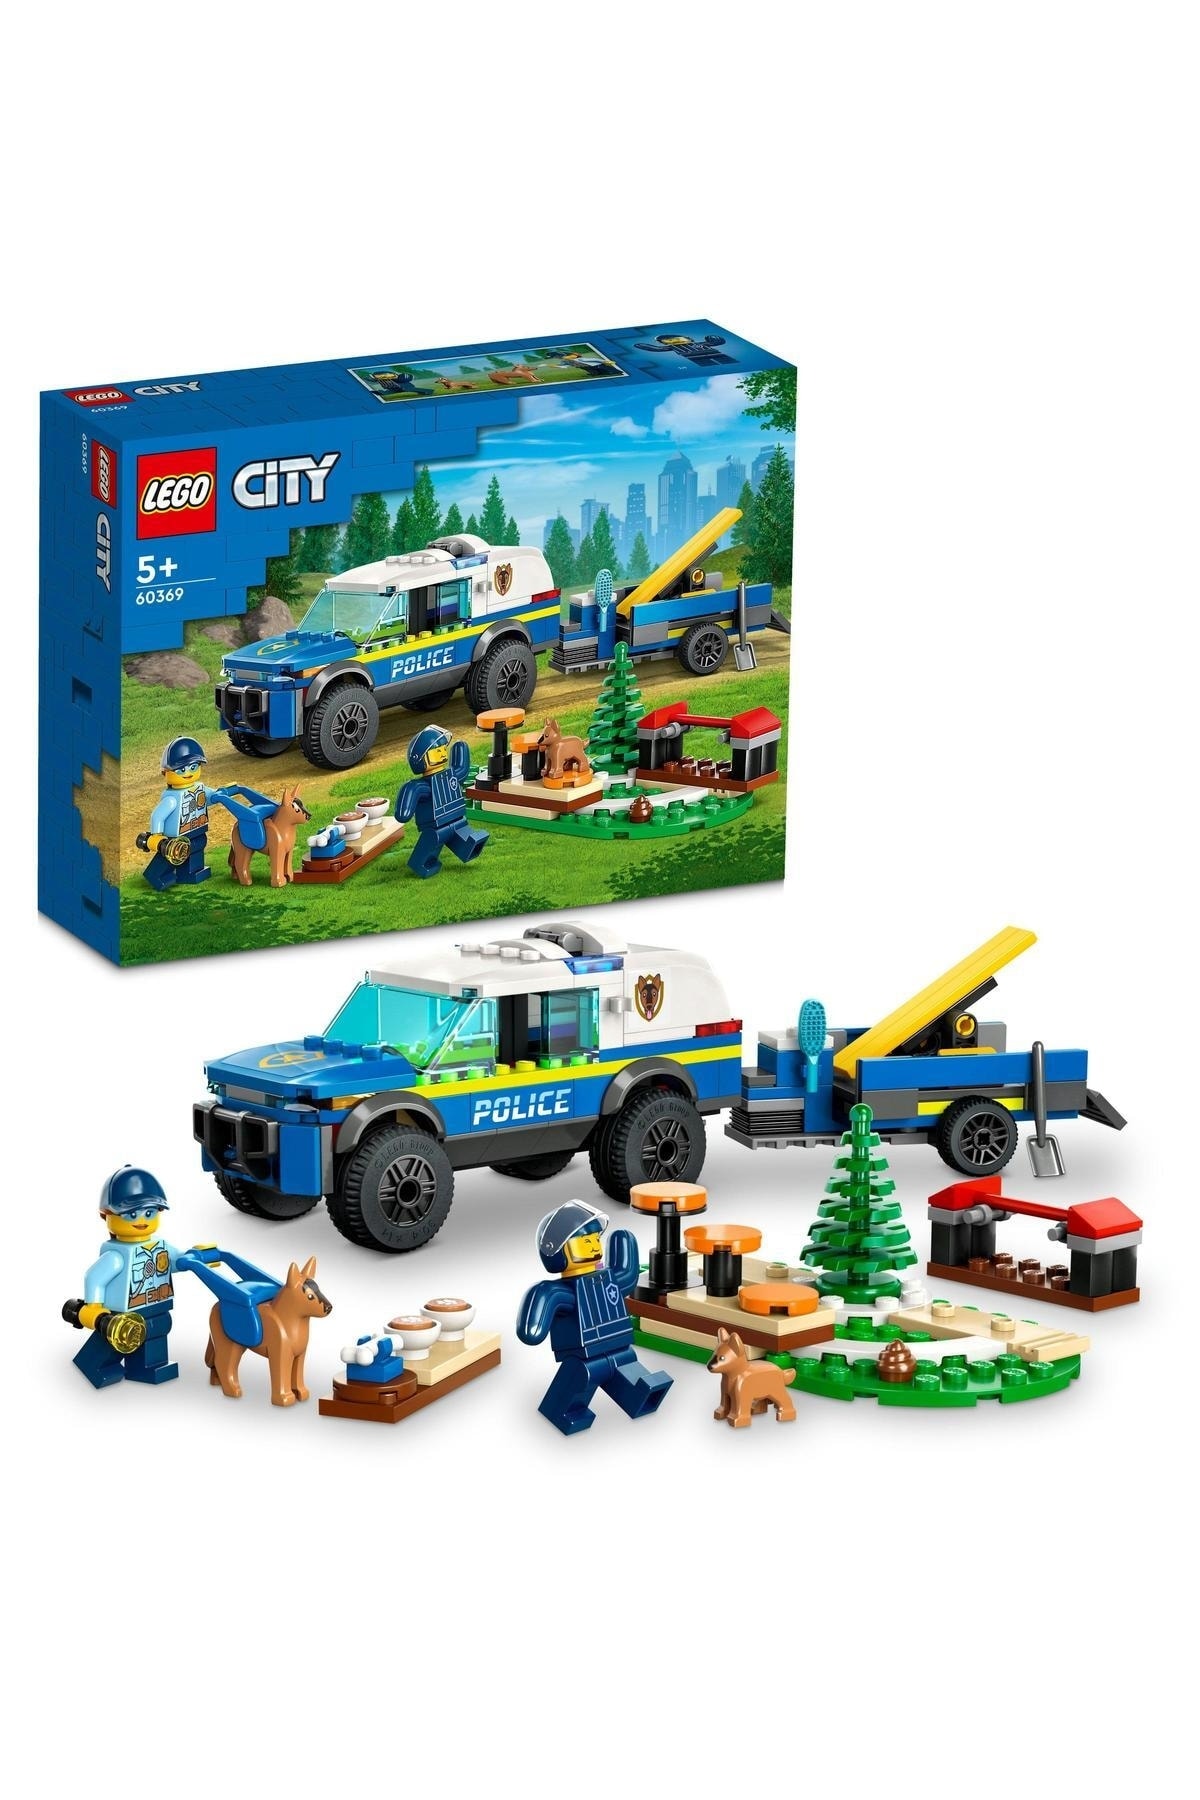 LEGO ® City Mobil Polis Köpeği Eğitimi 60369 - 5 Yaş ve Üzeri Çocuklar için Yapım Seti (197 Parça)